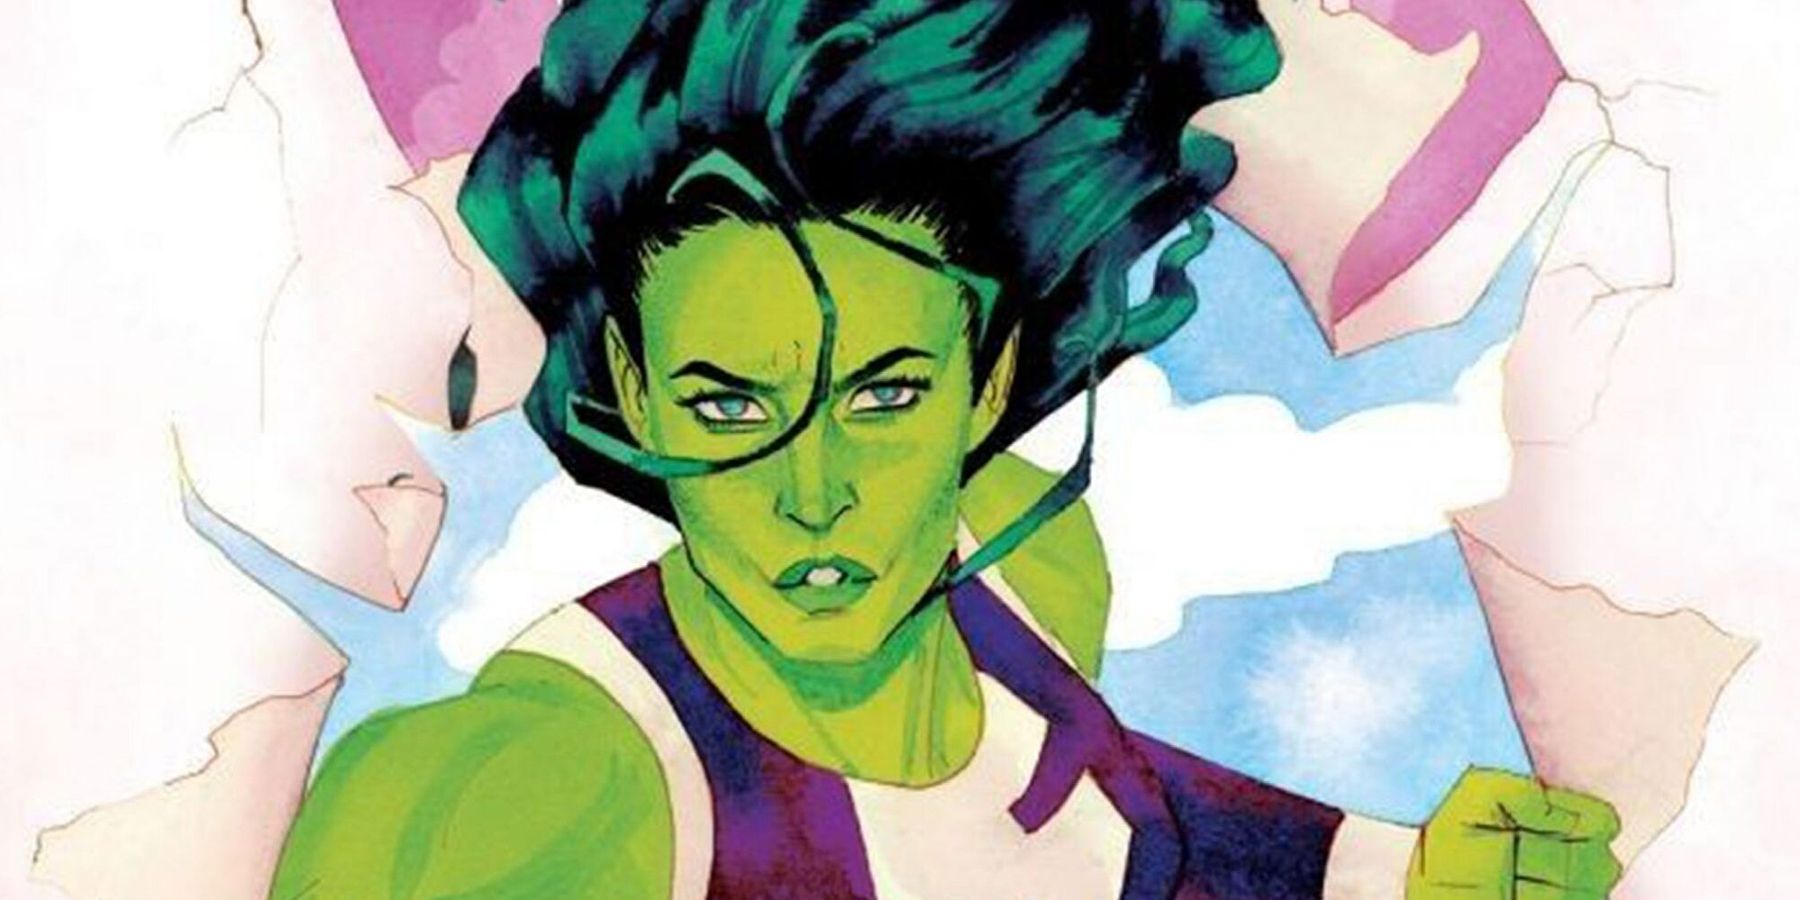 Sensational She-Hulk cover art